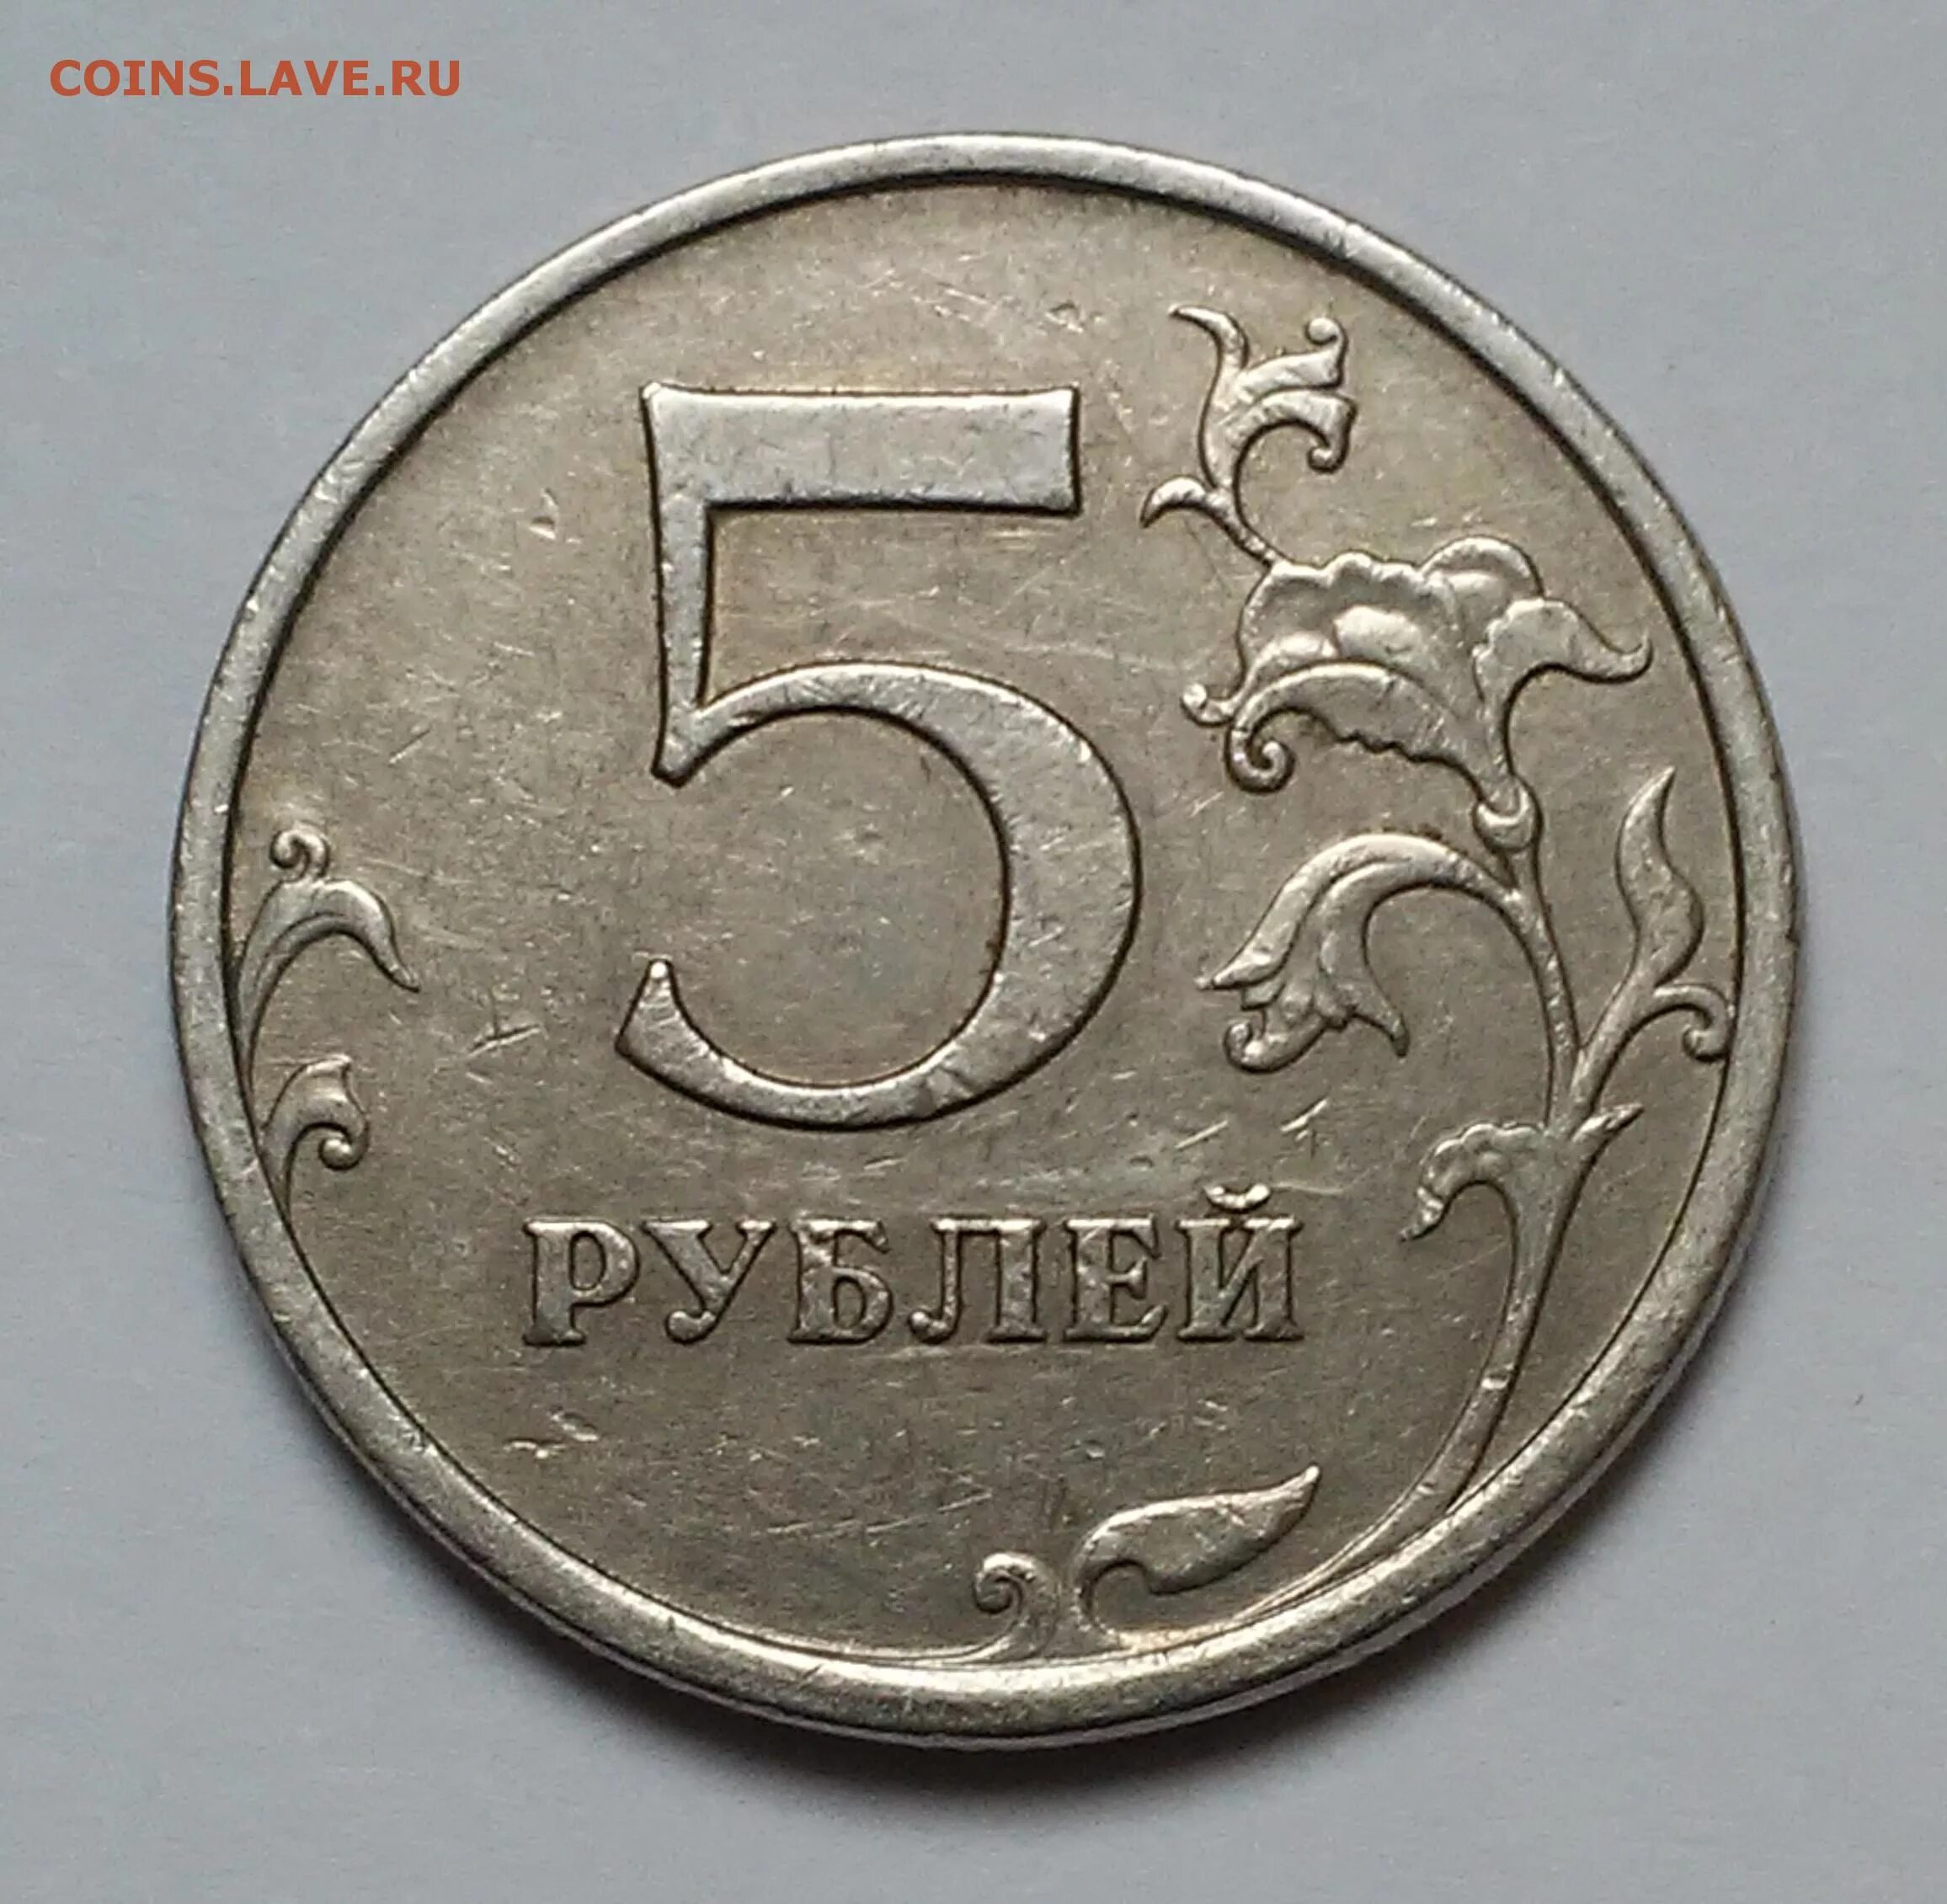 75 рублей 8. Монета 5 рублей 2003 года. Есть 5 рублей. Пять и десять рублей 1997 года.